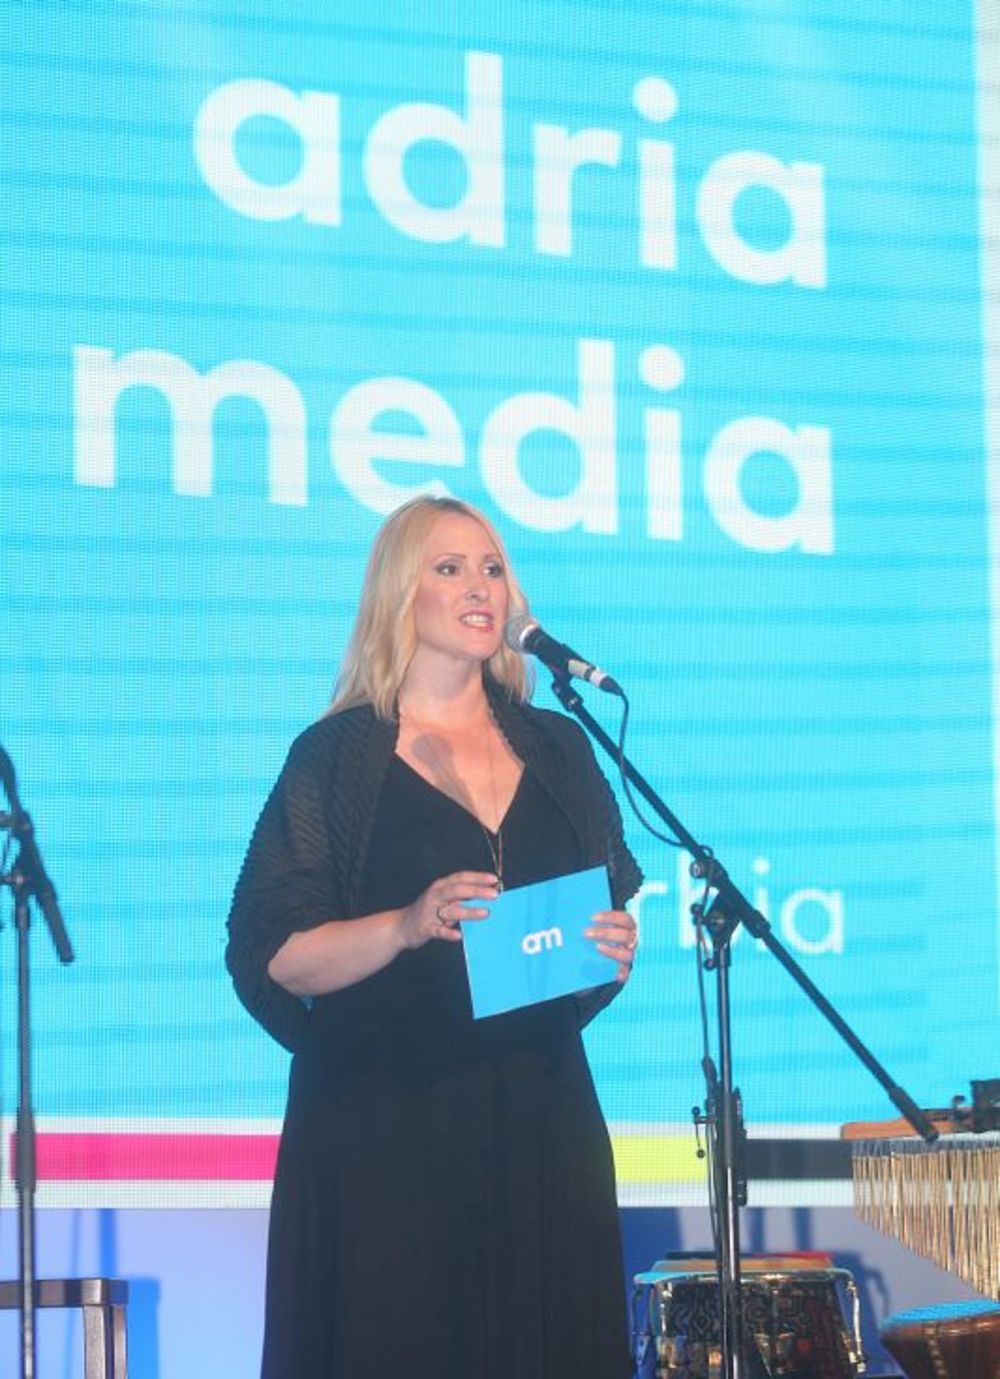 Kompanija Adria Media Serbia proslavila je korporativni dan zvaničnim koktelom koji je održan u Hotelu Jugoslavija. Na ovom događaju ustanovljena je AMS godišnja nagrada.